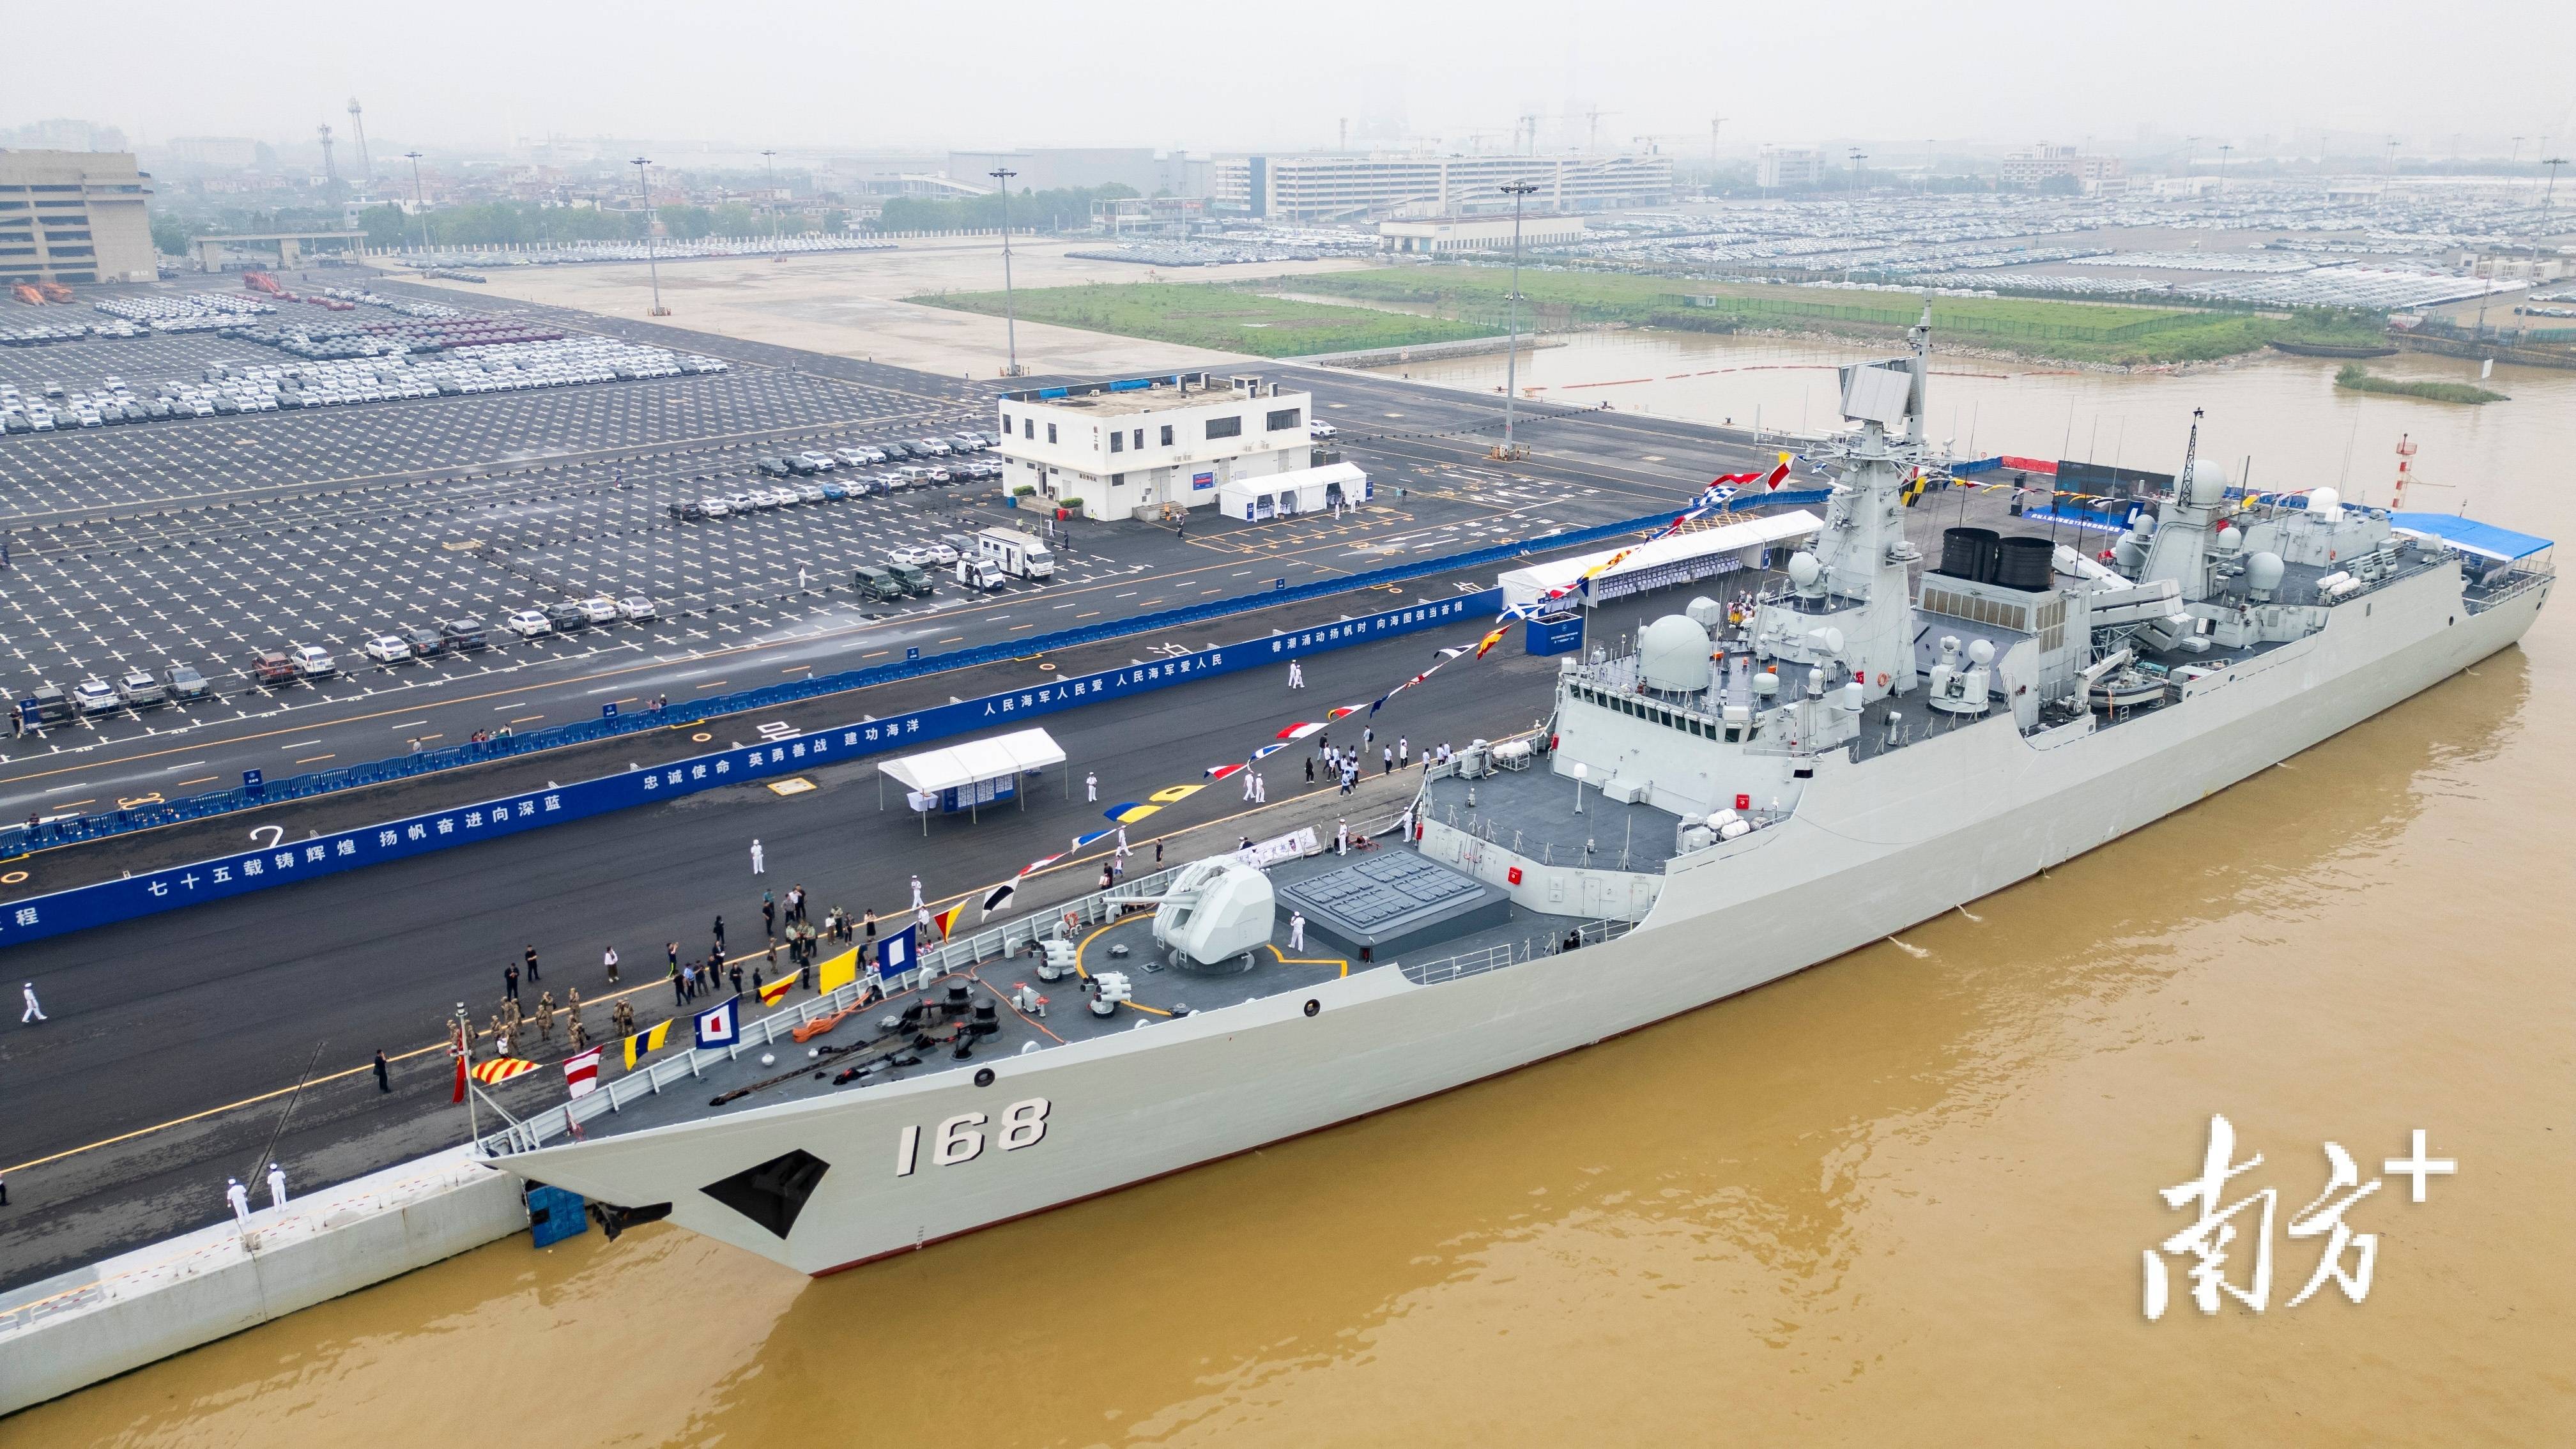 人民海军成立75周年纪念日,广州舰回到了娘家